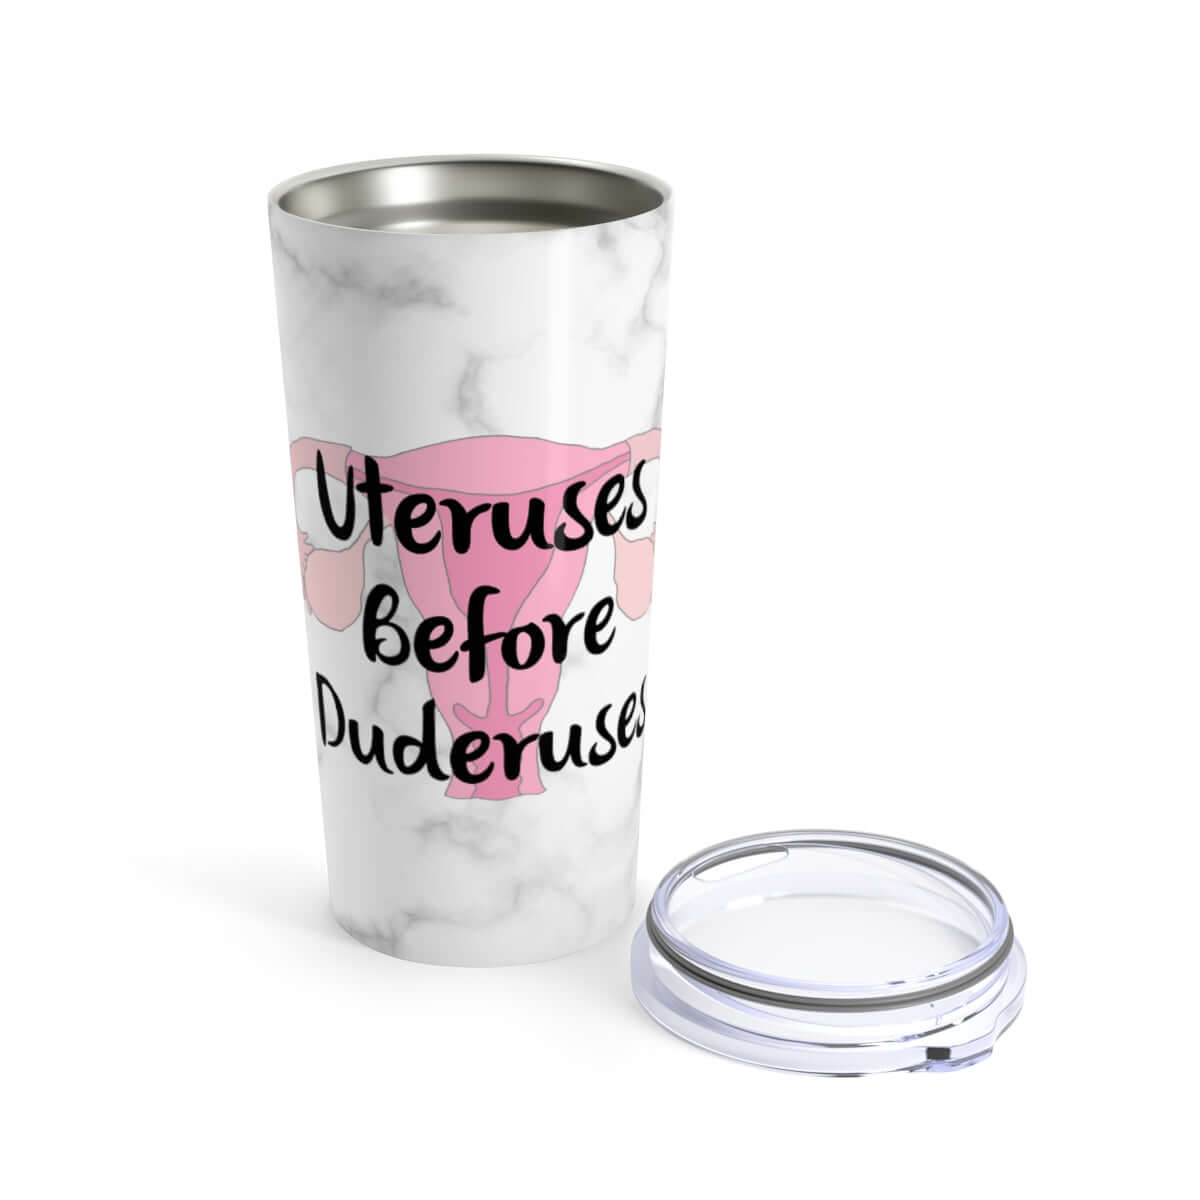 Uteruses before duderuses girl power stainless steel double wall tumbler travel mug